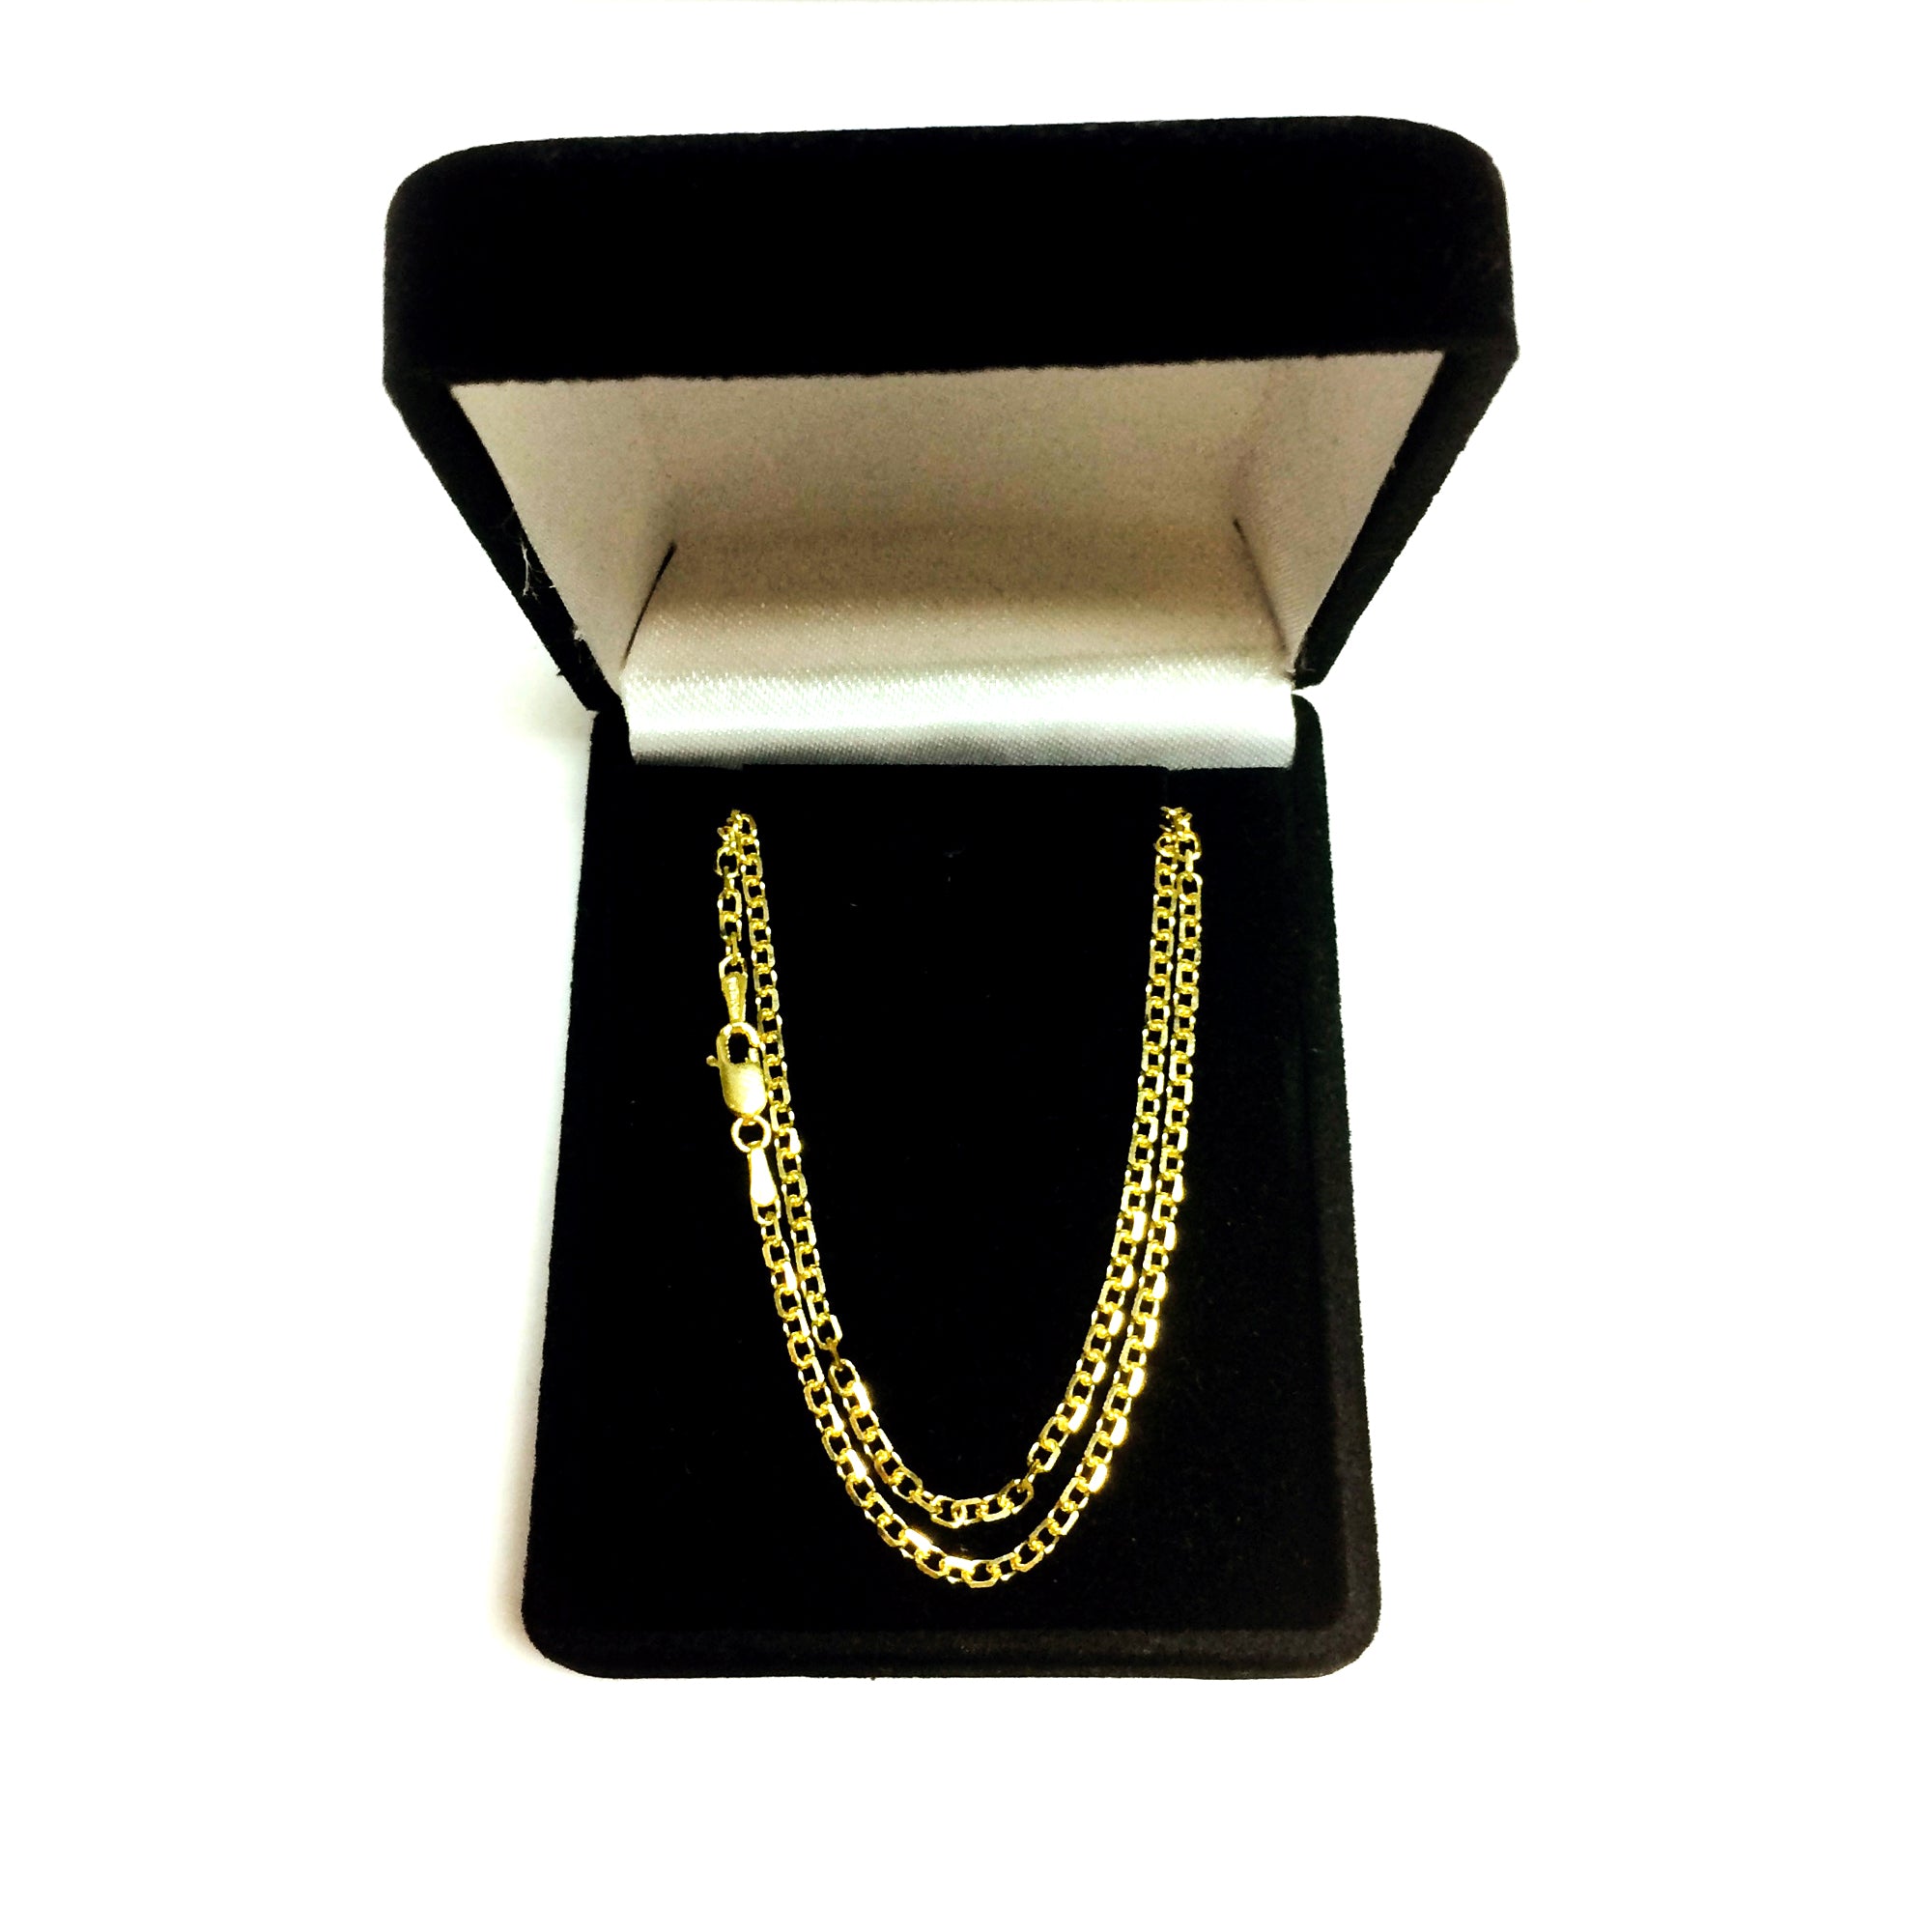 Collar de cadena con eslabones tipo cable de oro amarillo de 14 k, joyería fina de diseño de 2,3 mm para hombres y mujeres